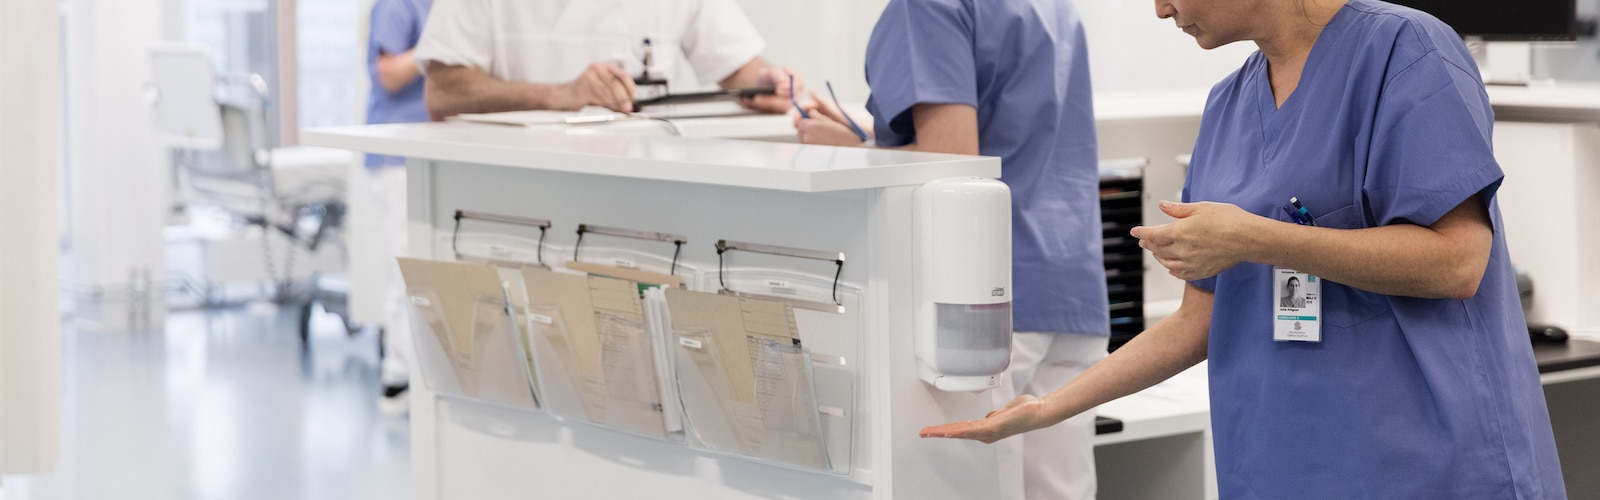 Sykepleier desinfiserer hendene ved en veggmontert dispenser